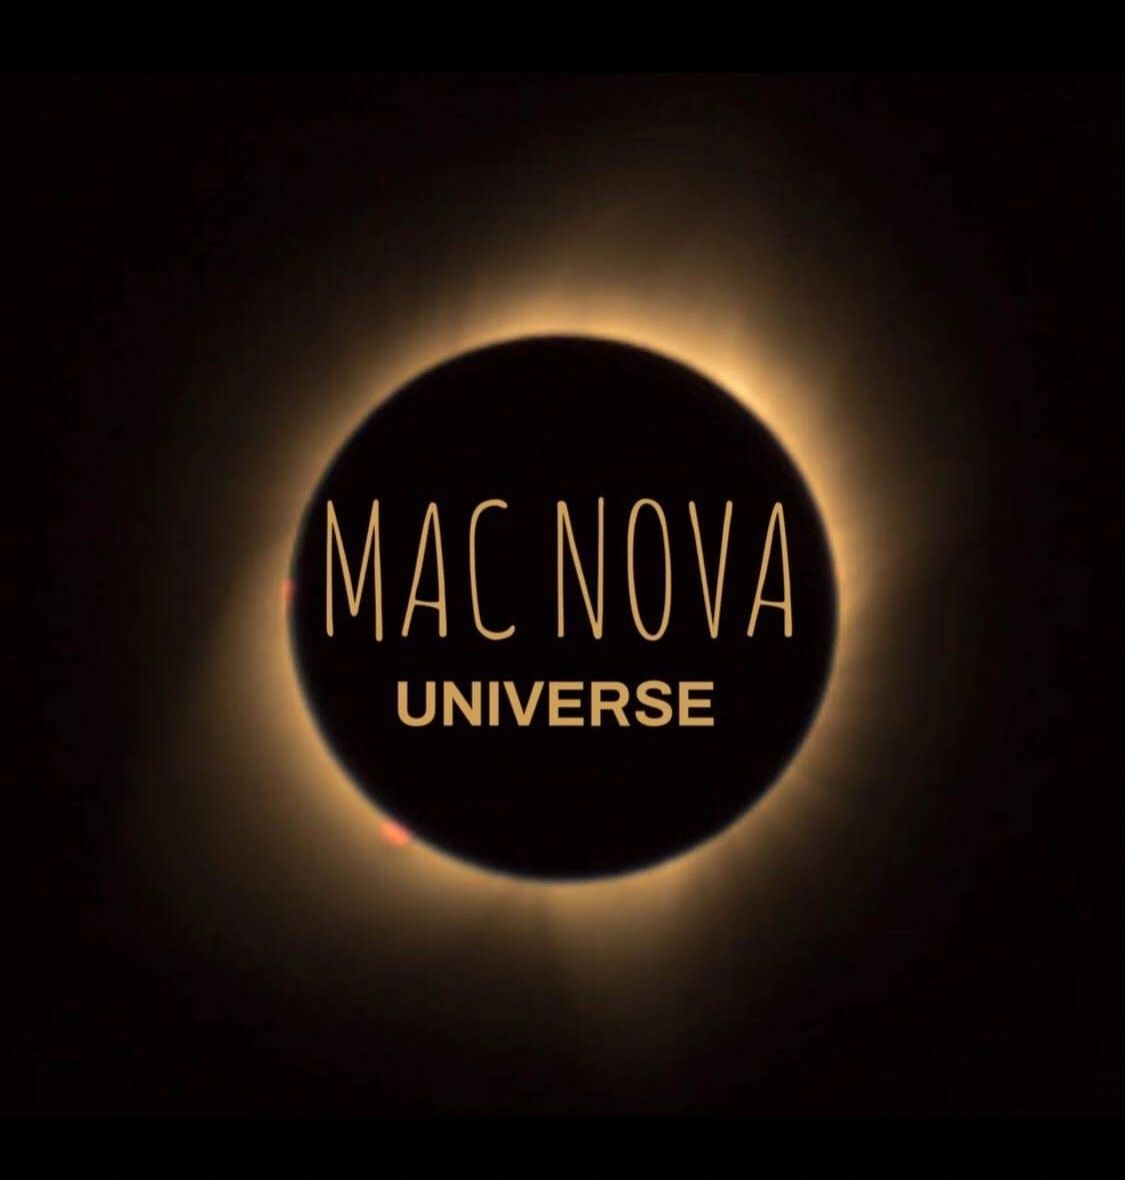 download the new for mac Nova